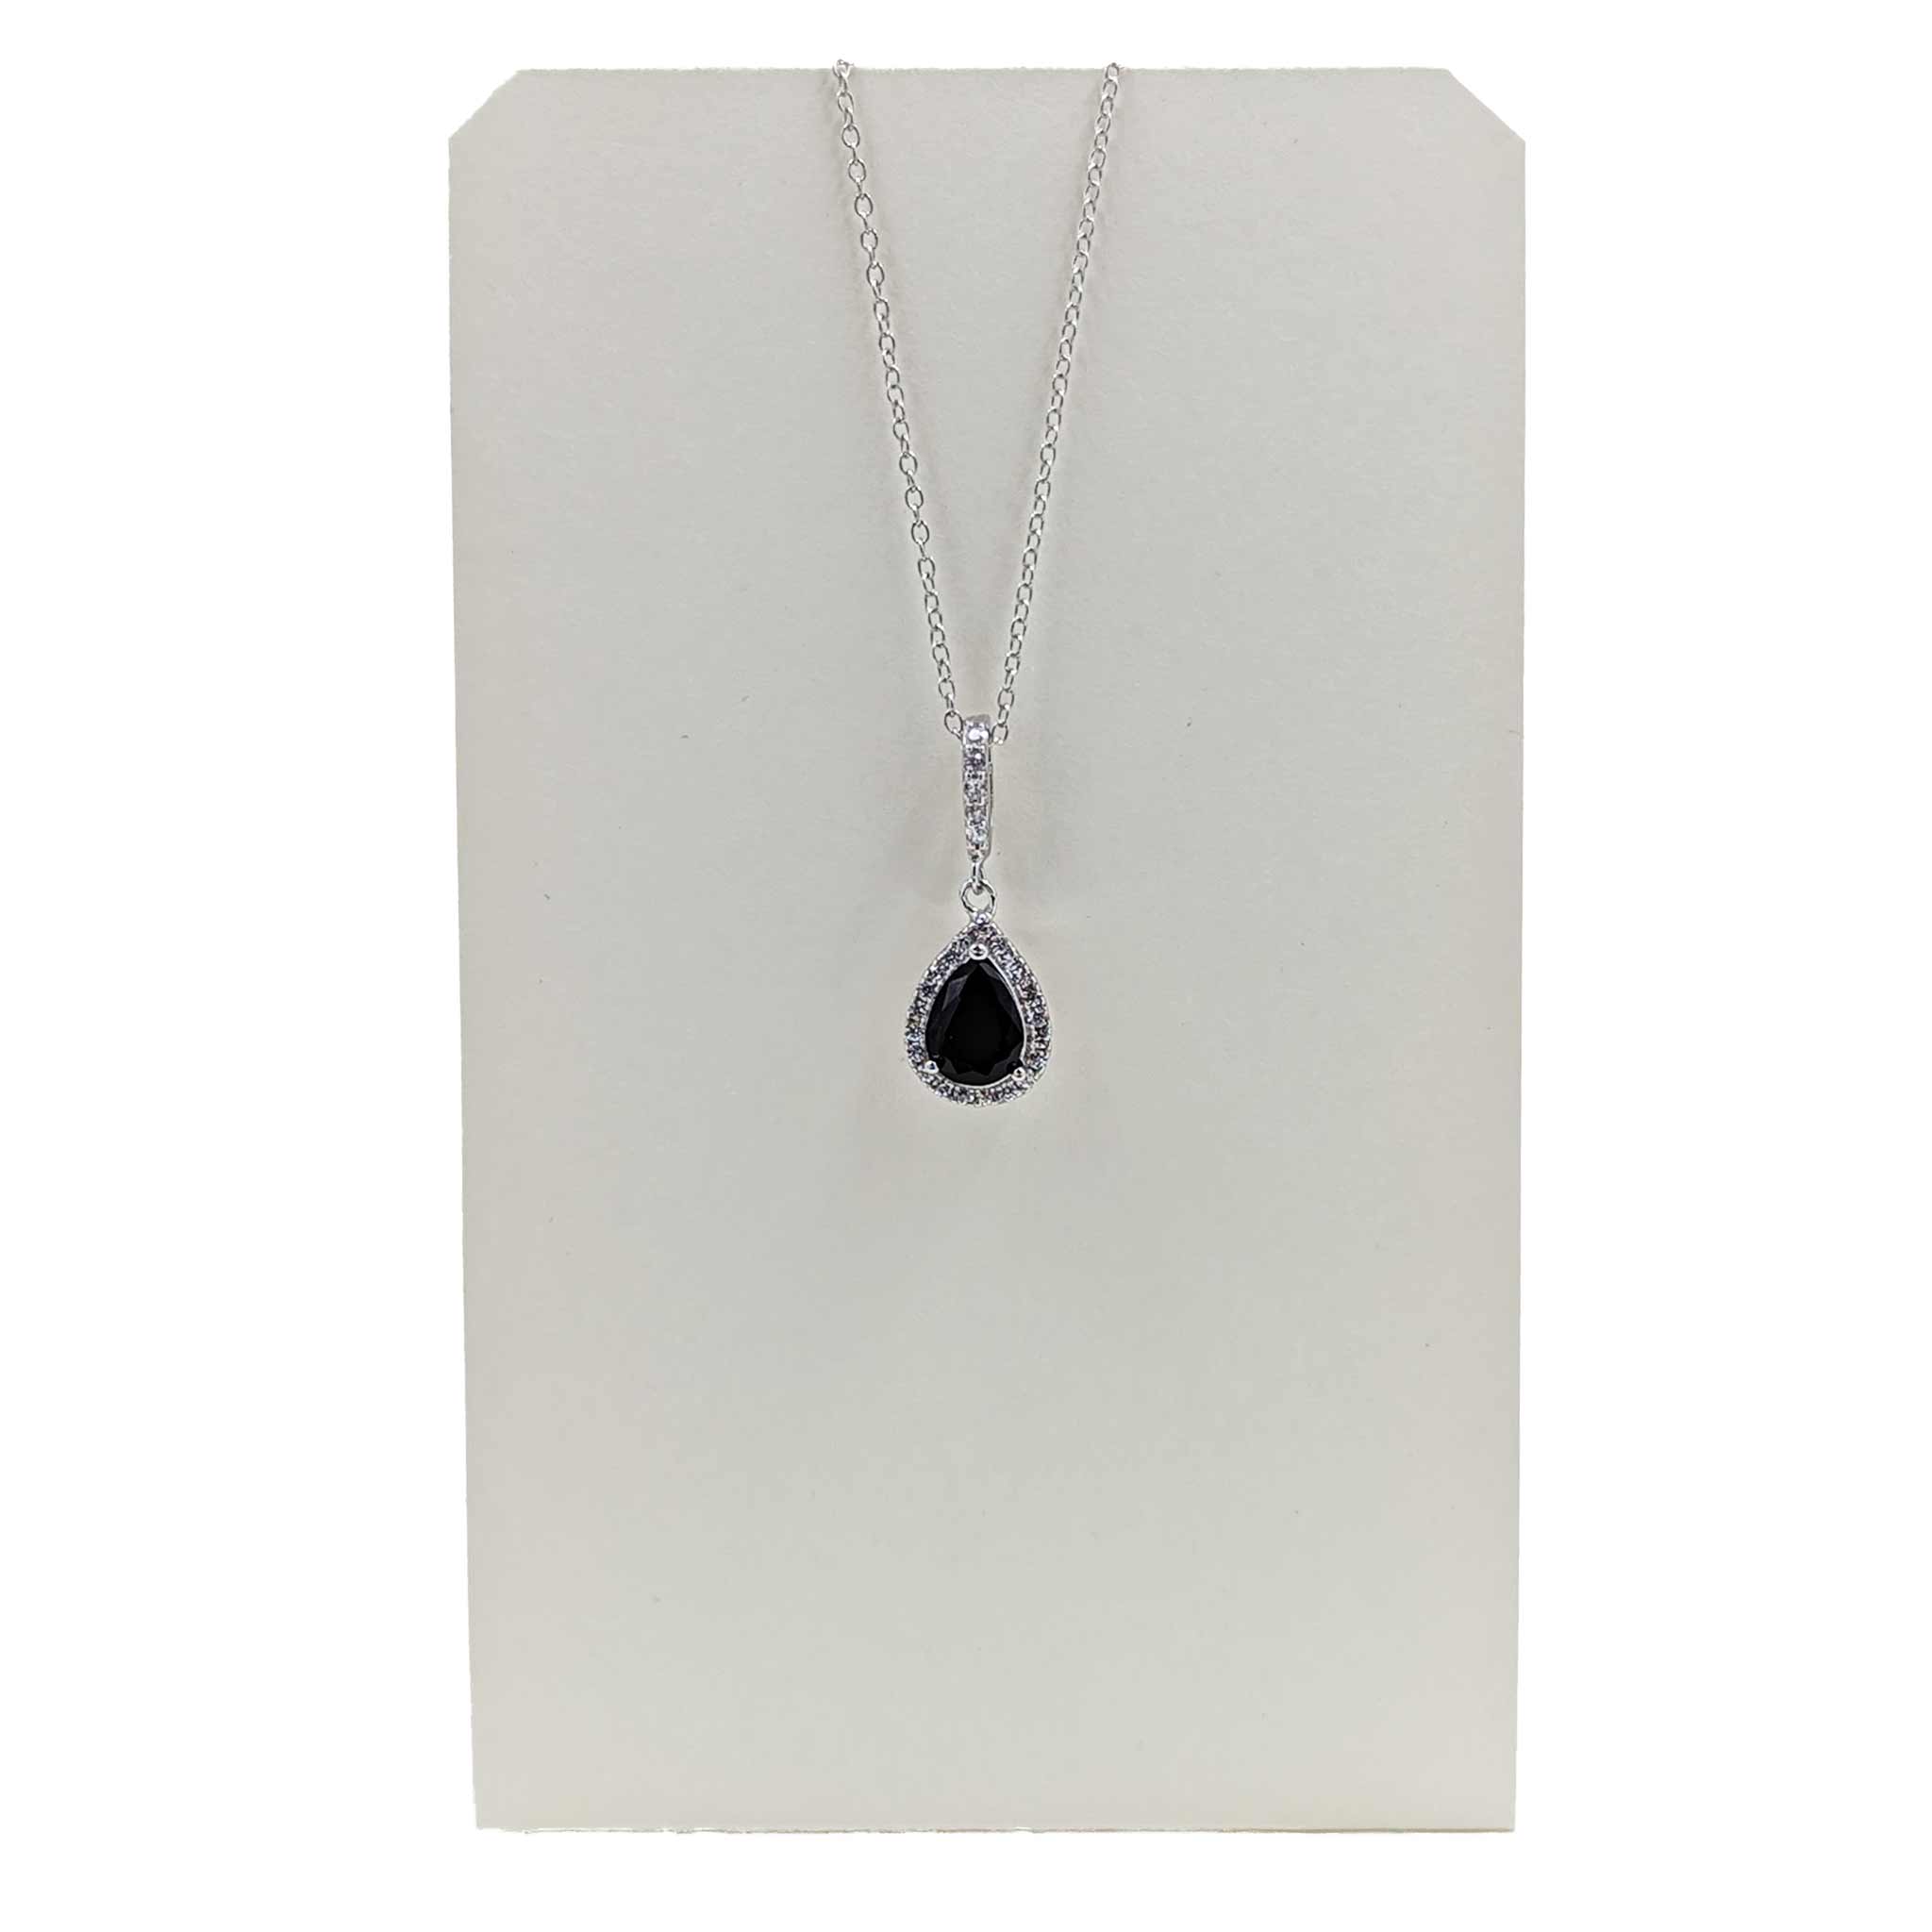 Necklace-Teardrop Pendant w/Black CZ-Sterling Silver